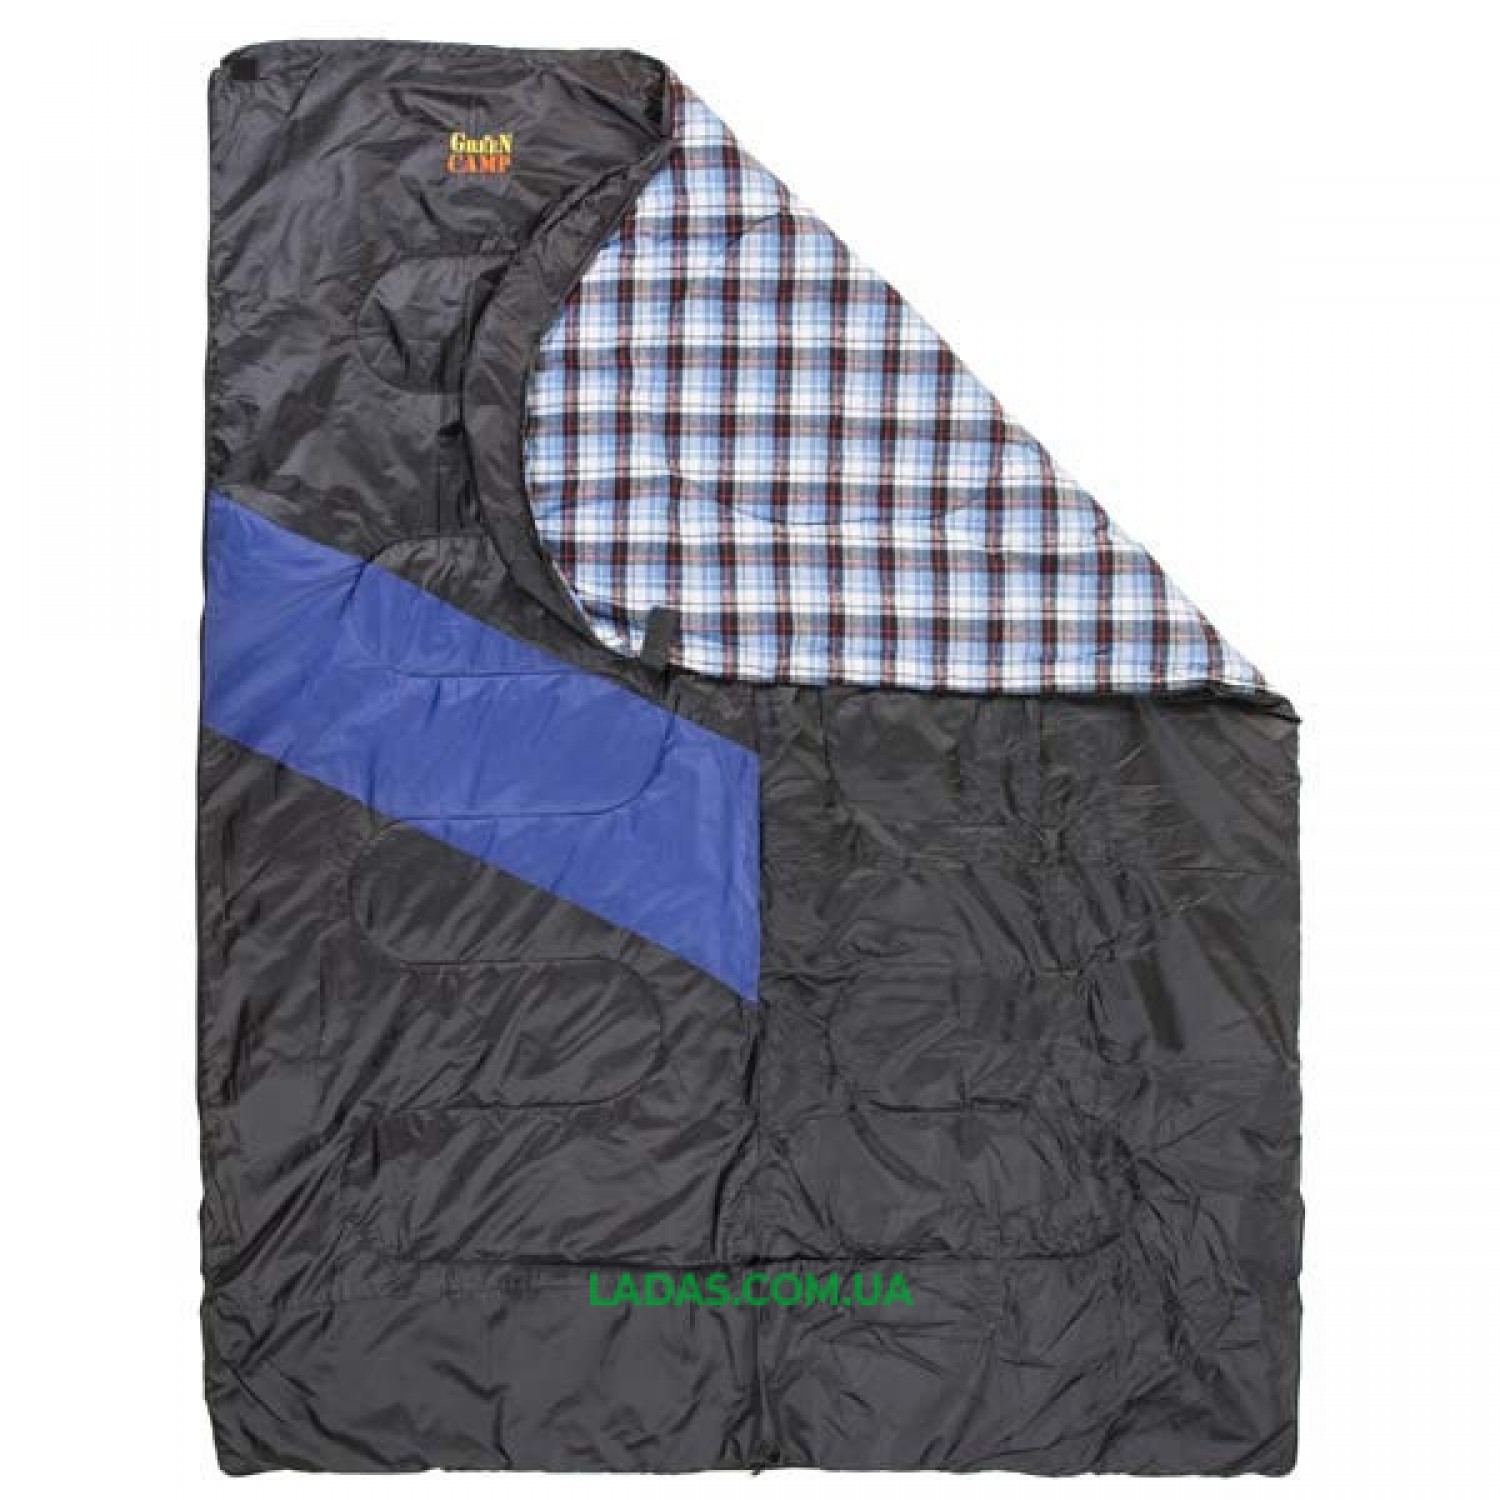 Спальник GreenCamp, одеяло, 450гр/м2, черно/голубой, подкладка Barberi, 230 х 80 см.